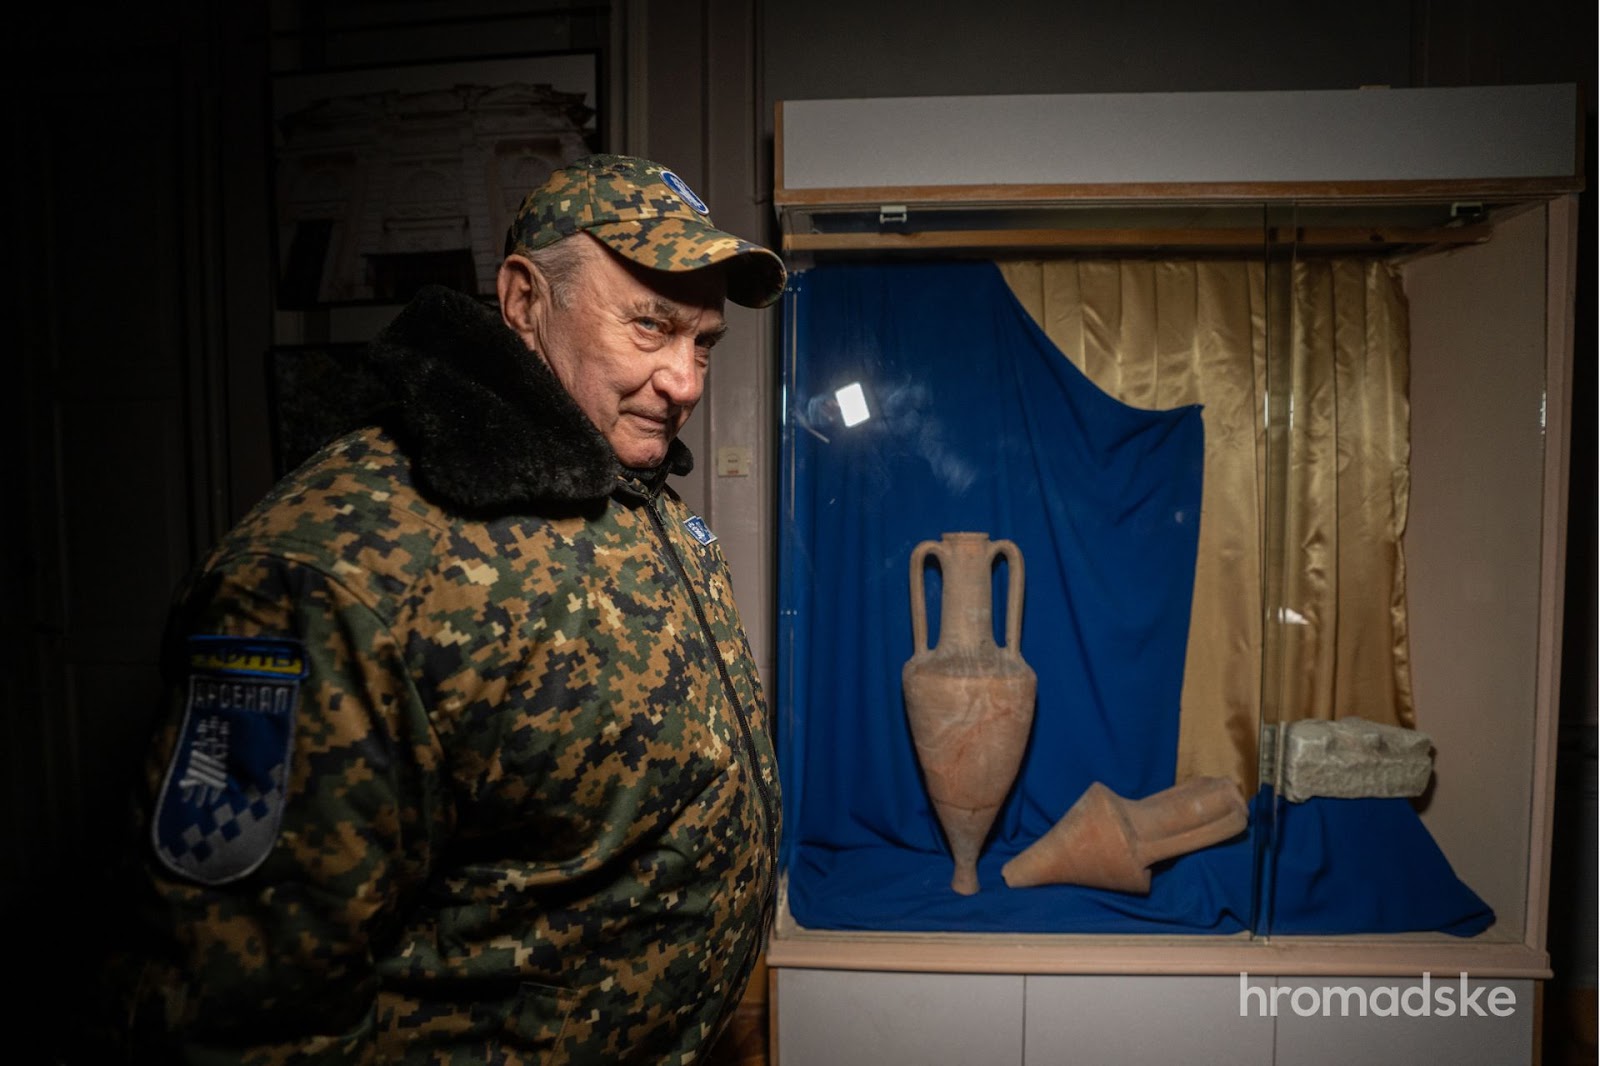 Охоронець Анатолій Матвієнко зачаровано розглядає стародавню амфору за музейною вітриною